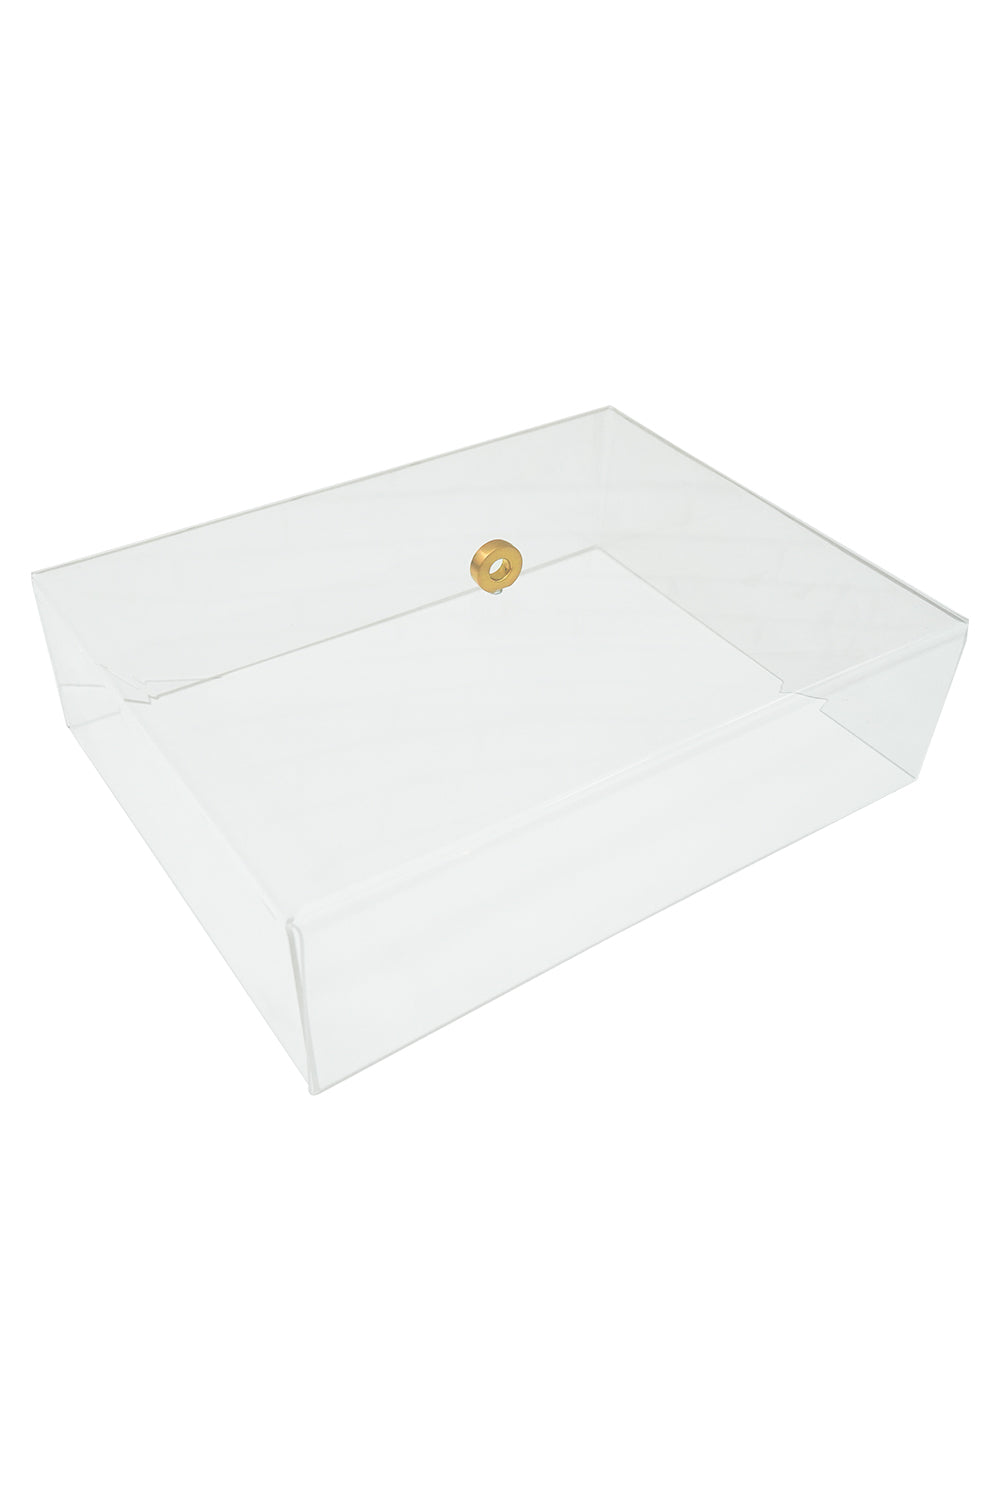 Plexiglass Cover Box For Medium Tray - Maison7